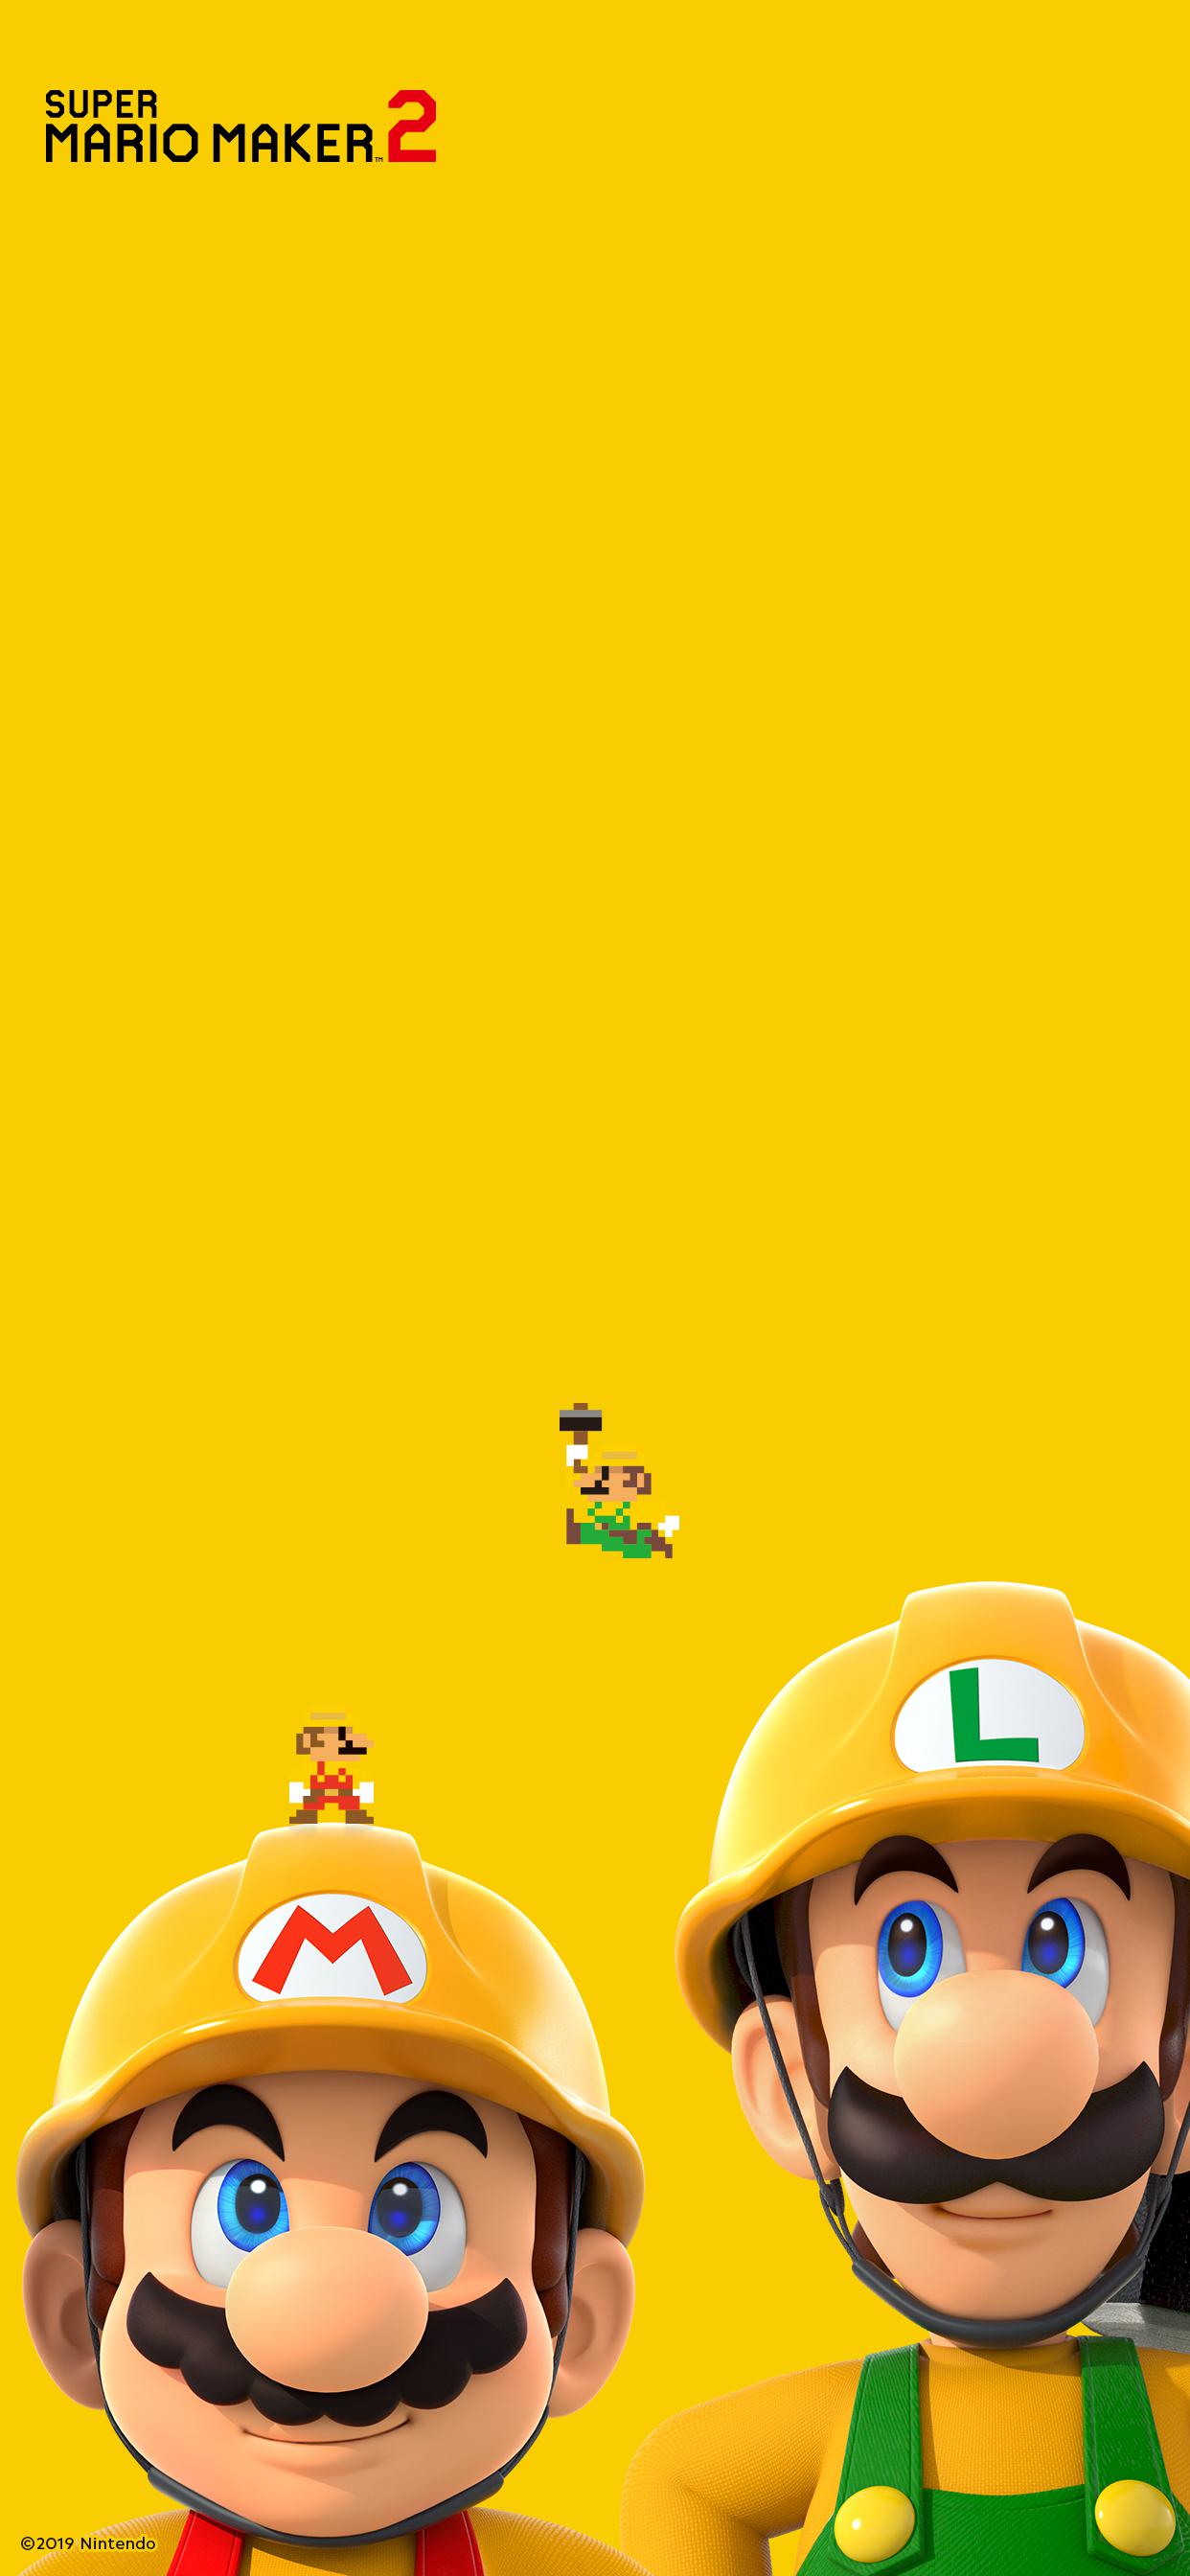 Super Mario Bros 3 iPhone Wallpaper Free Super Mario Bros 3 iPhone Background